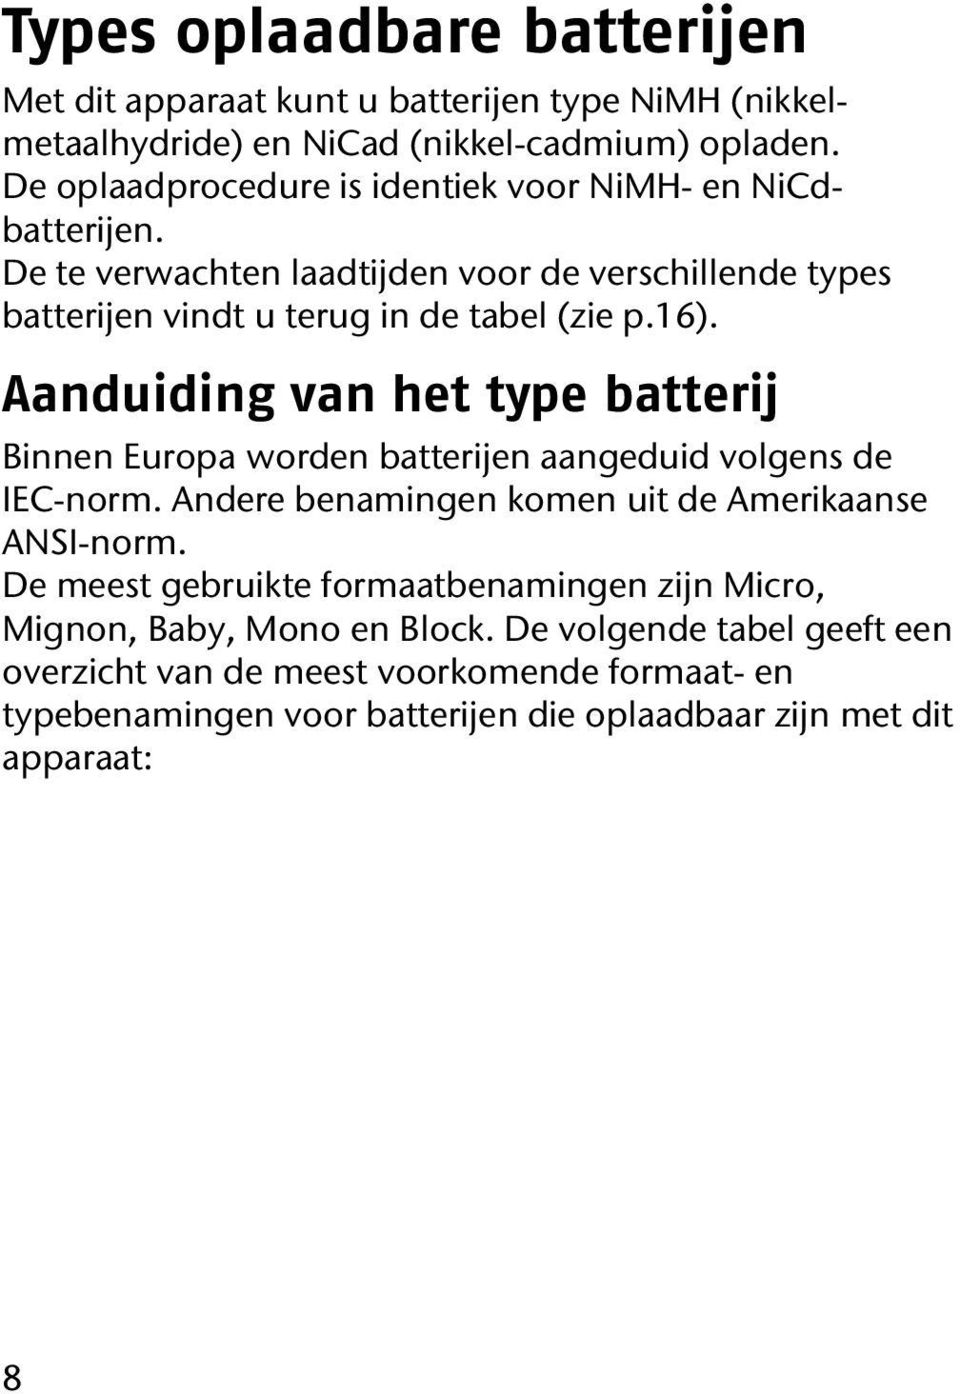 Aanduiding van het type batterij Binnen Europa worden batterijen aangeduid volgens de IEC-norm. Andere benamingen komen uit de Amerikaanse ANSI-norm.